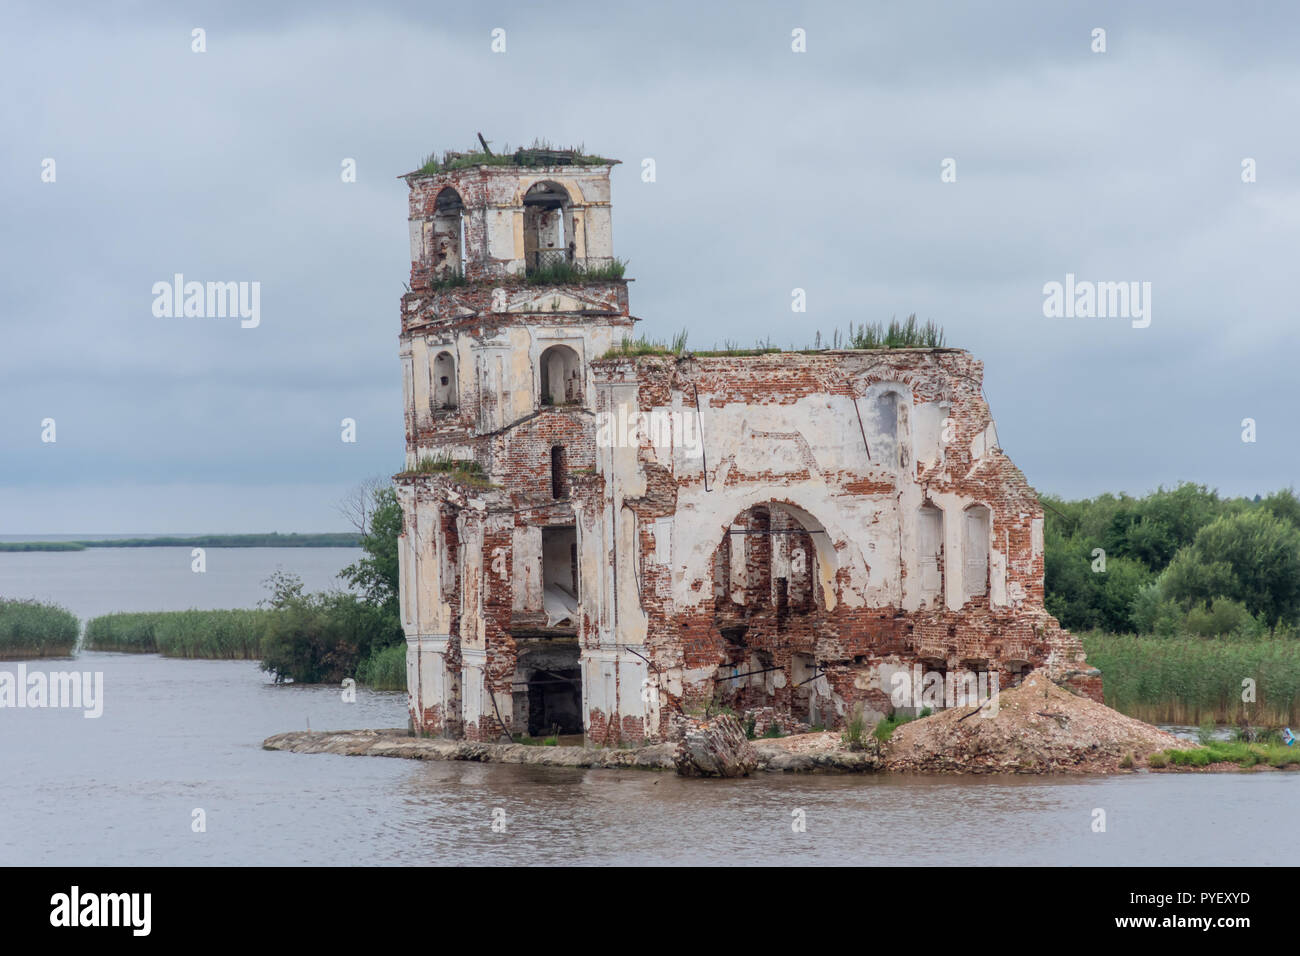 Semi-submerged church in Krokhino, Russia Stock Photo